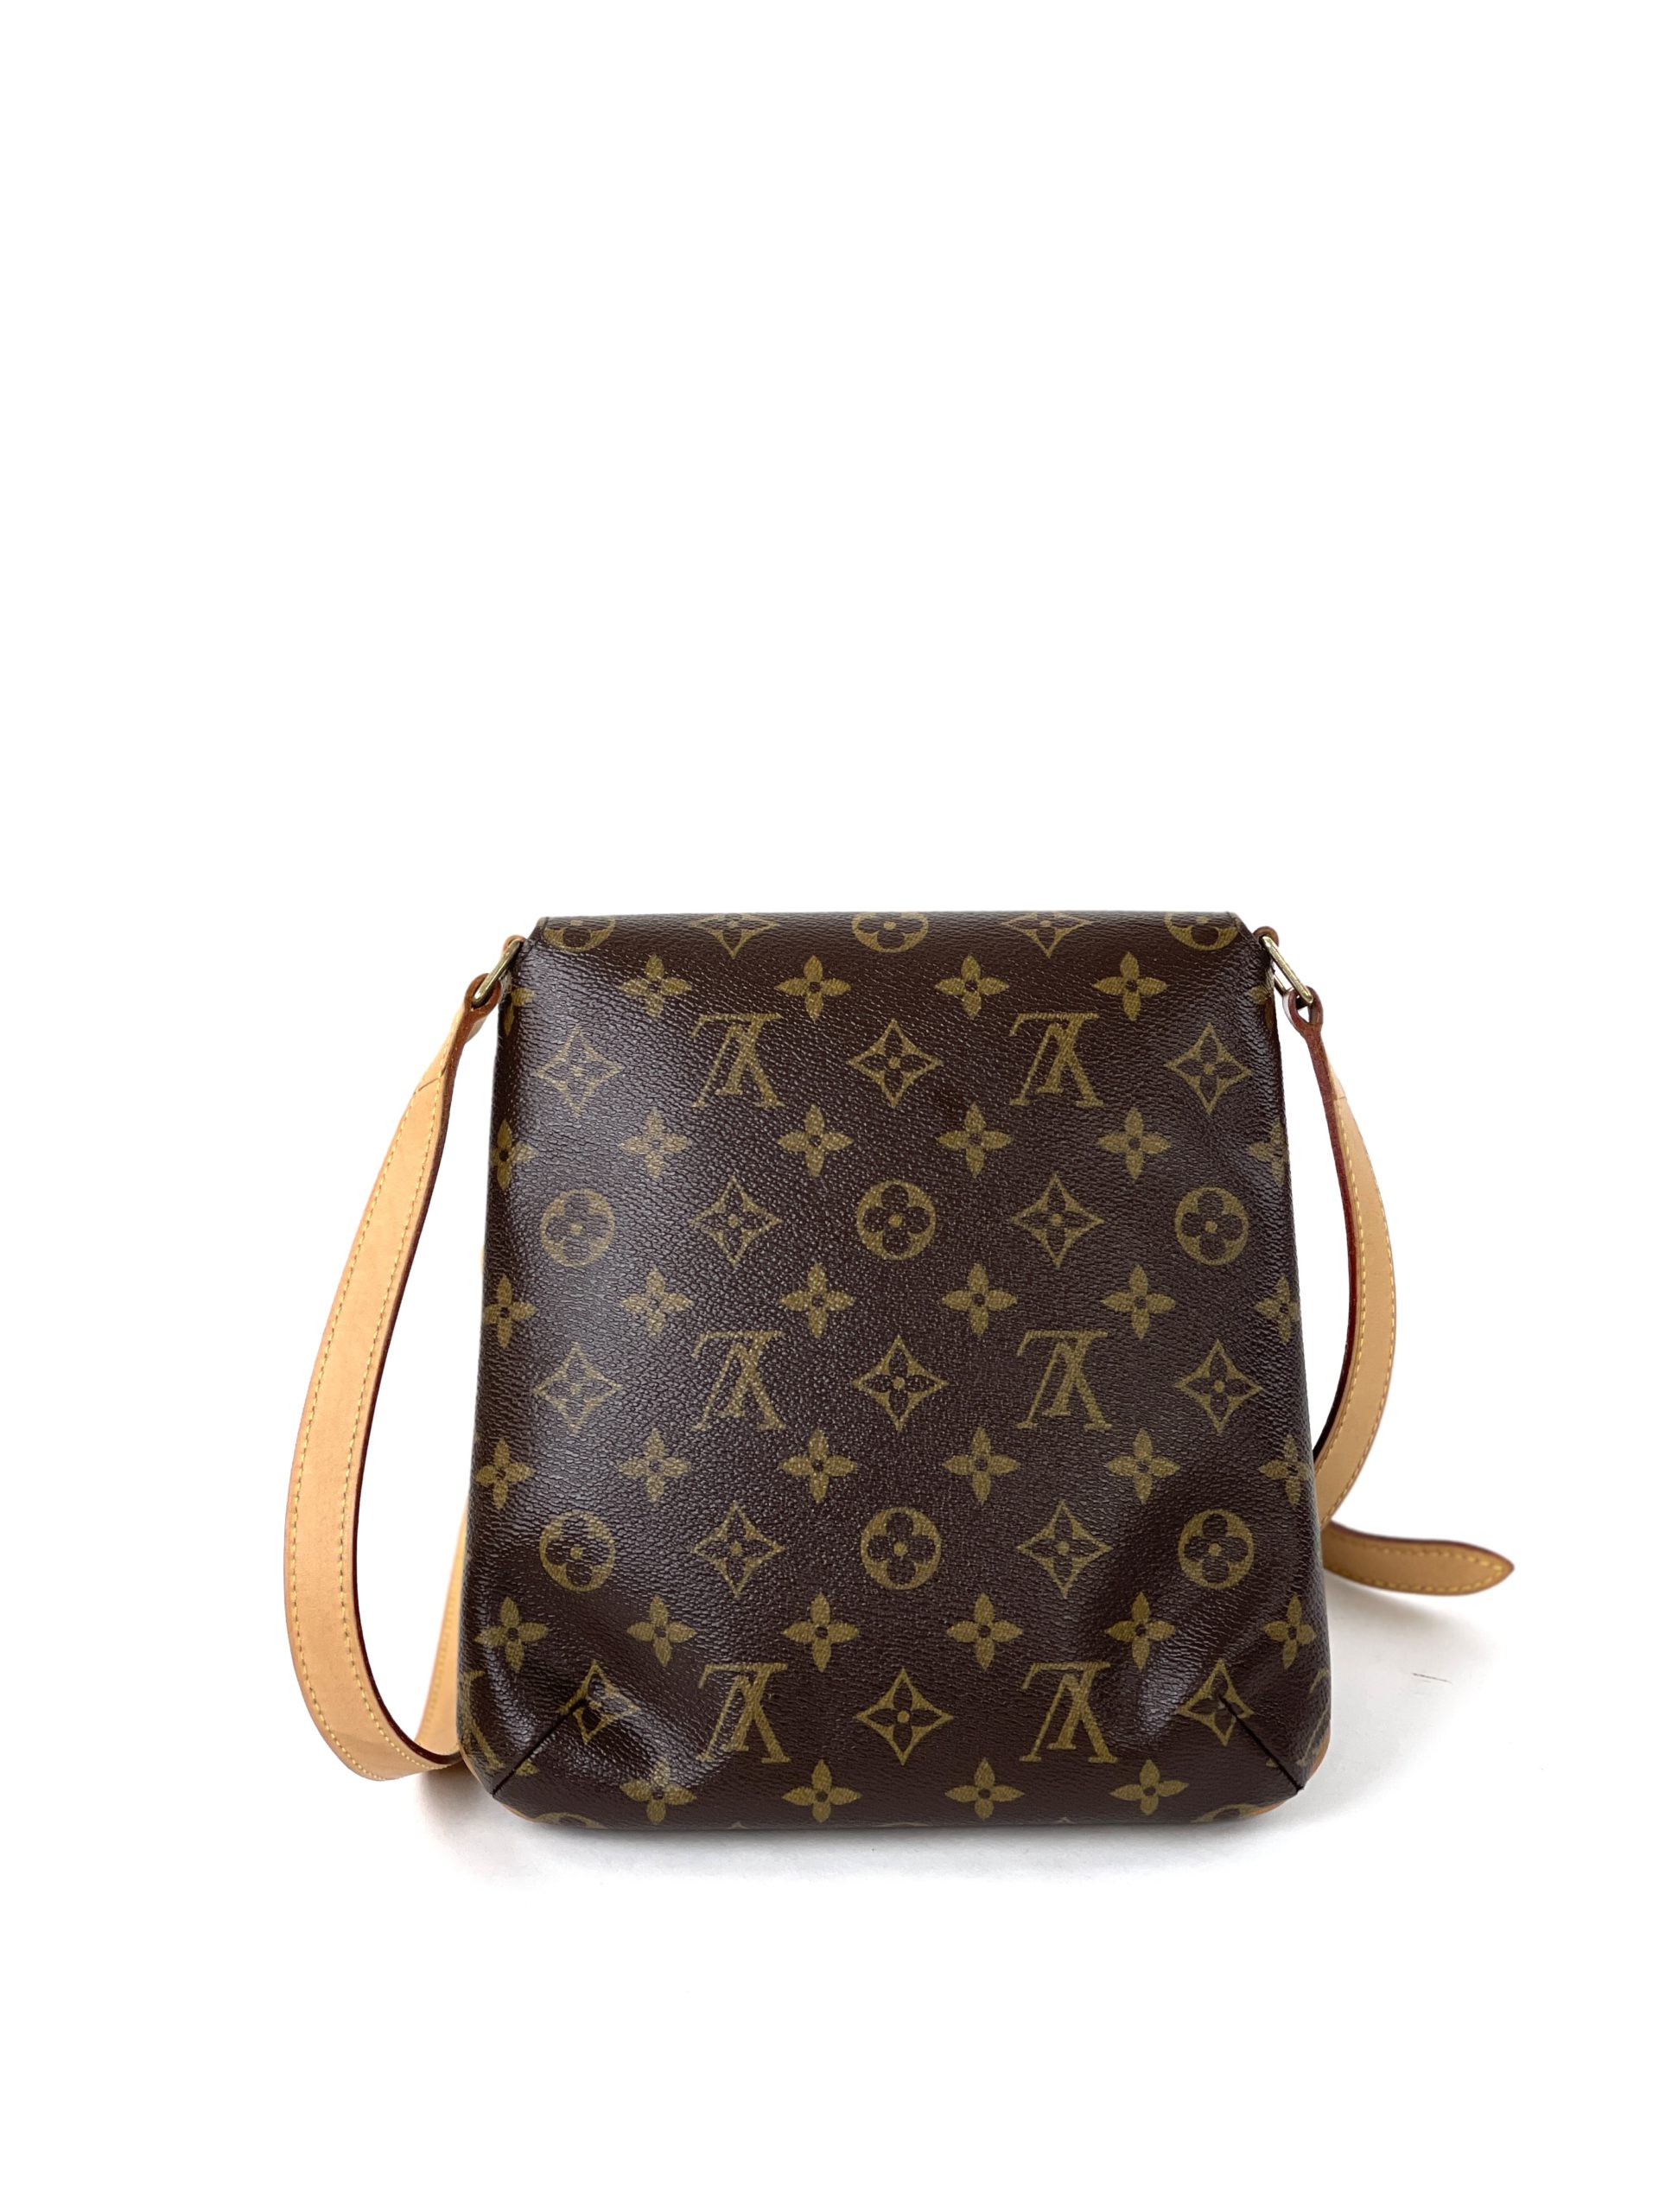 Louis Vuitton Musette Salsa PM Monogram Shoulder Bag Purse Bag Small Box Dust